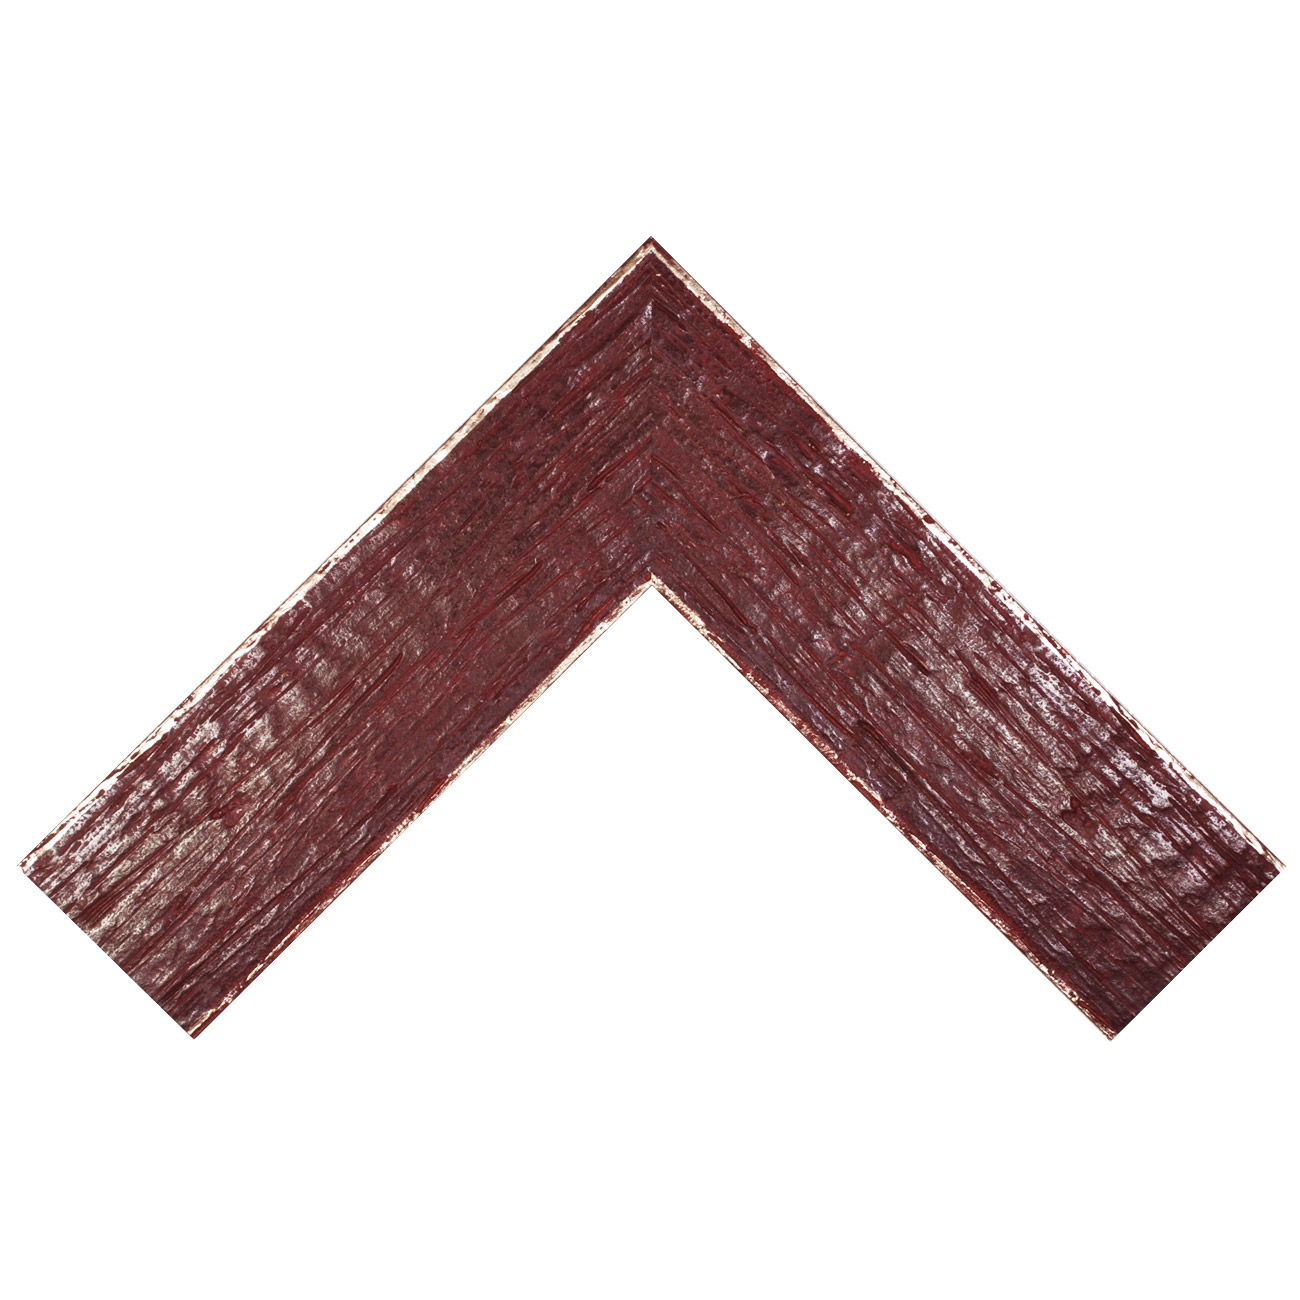 Baguette bois profil plat largeur 9.6cm couleur bordeaux filet argent chaud sur les bords antiques